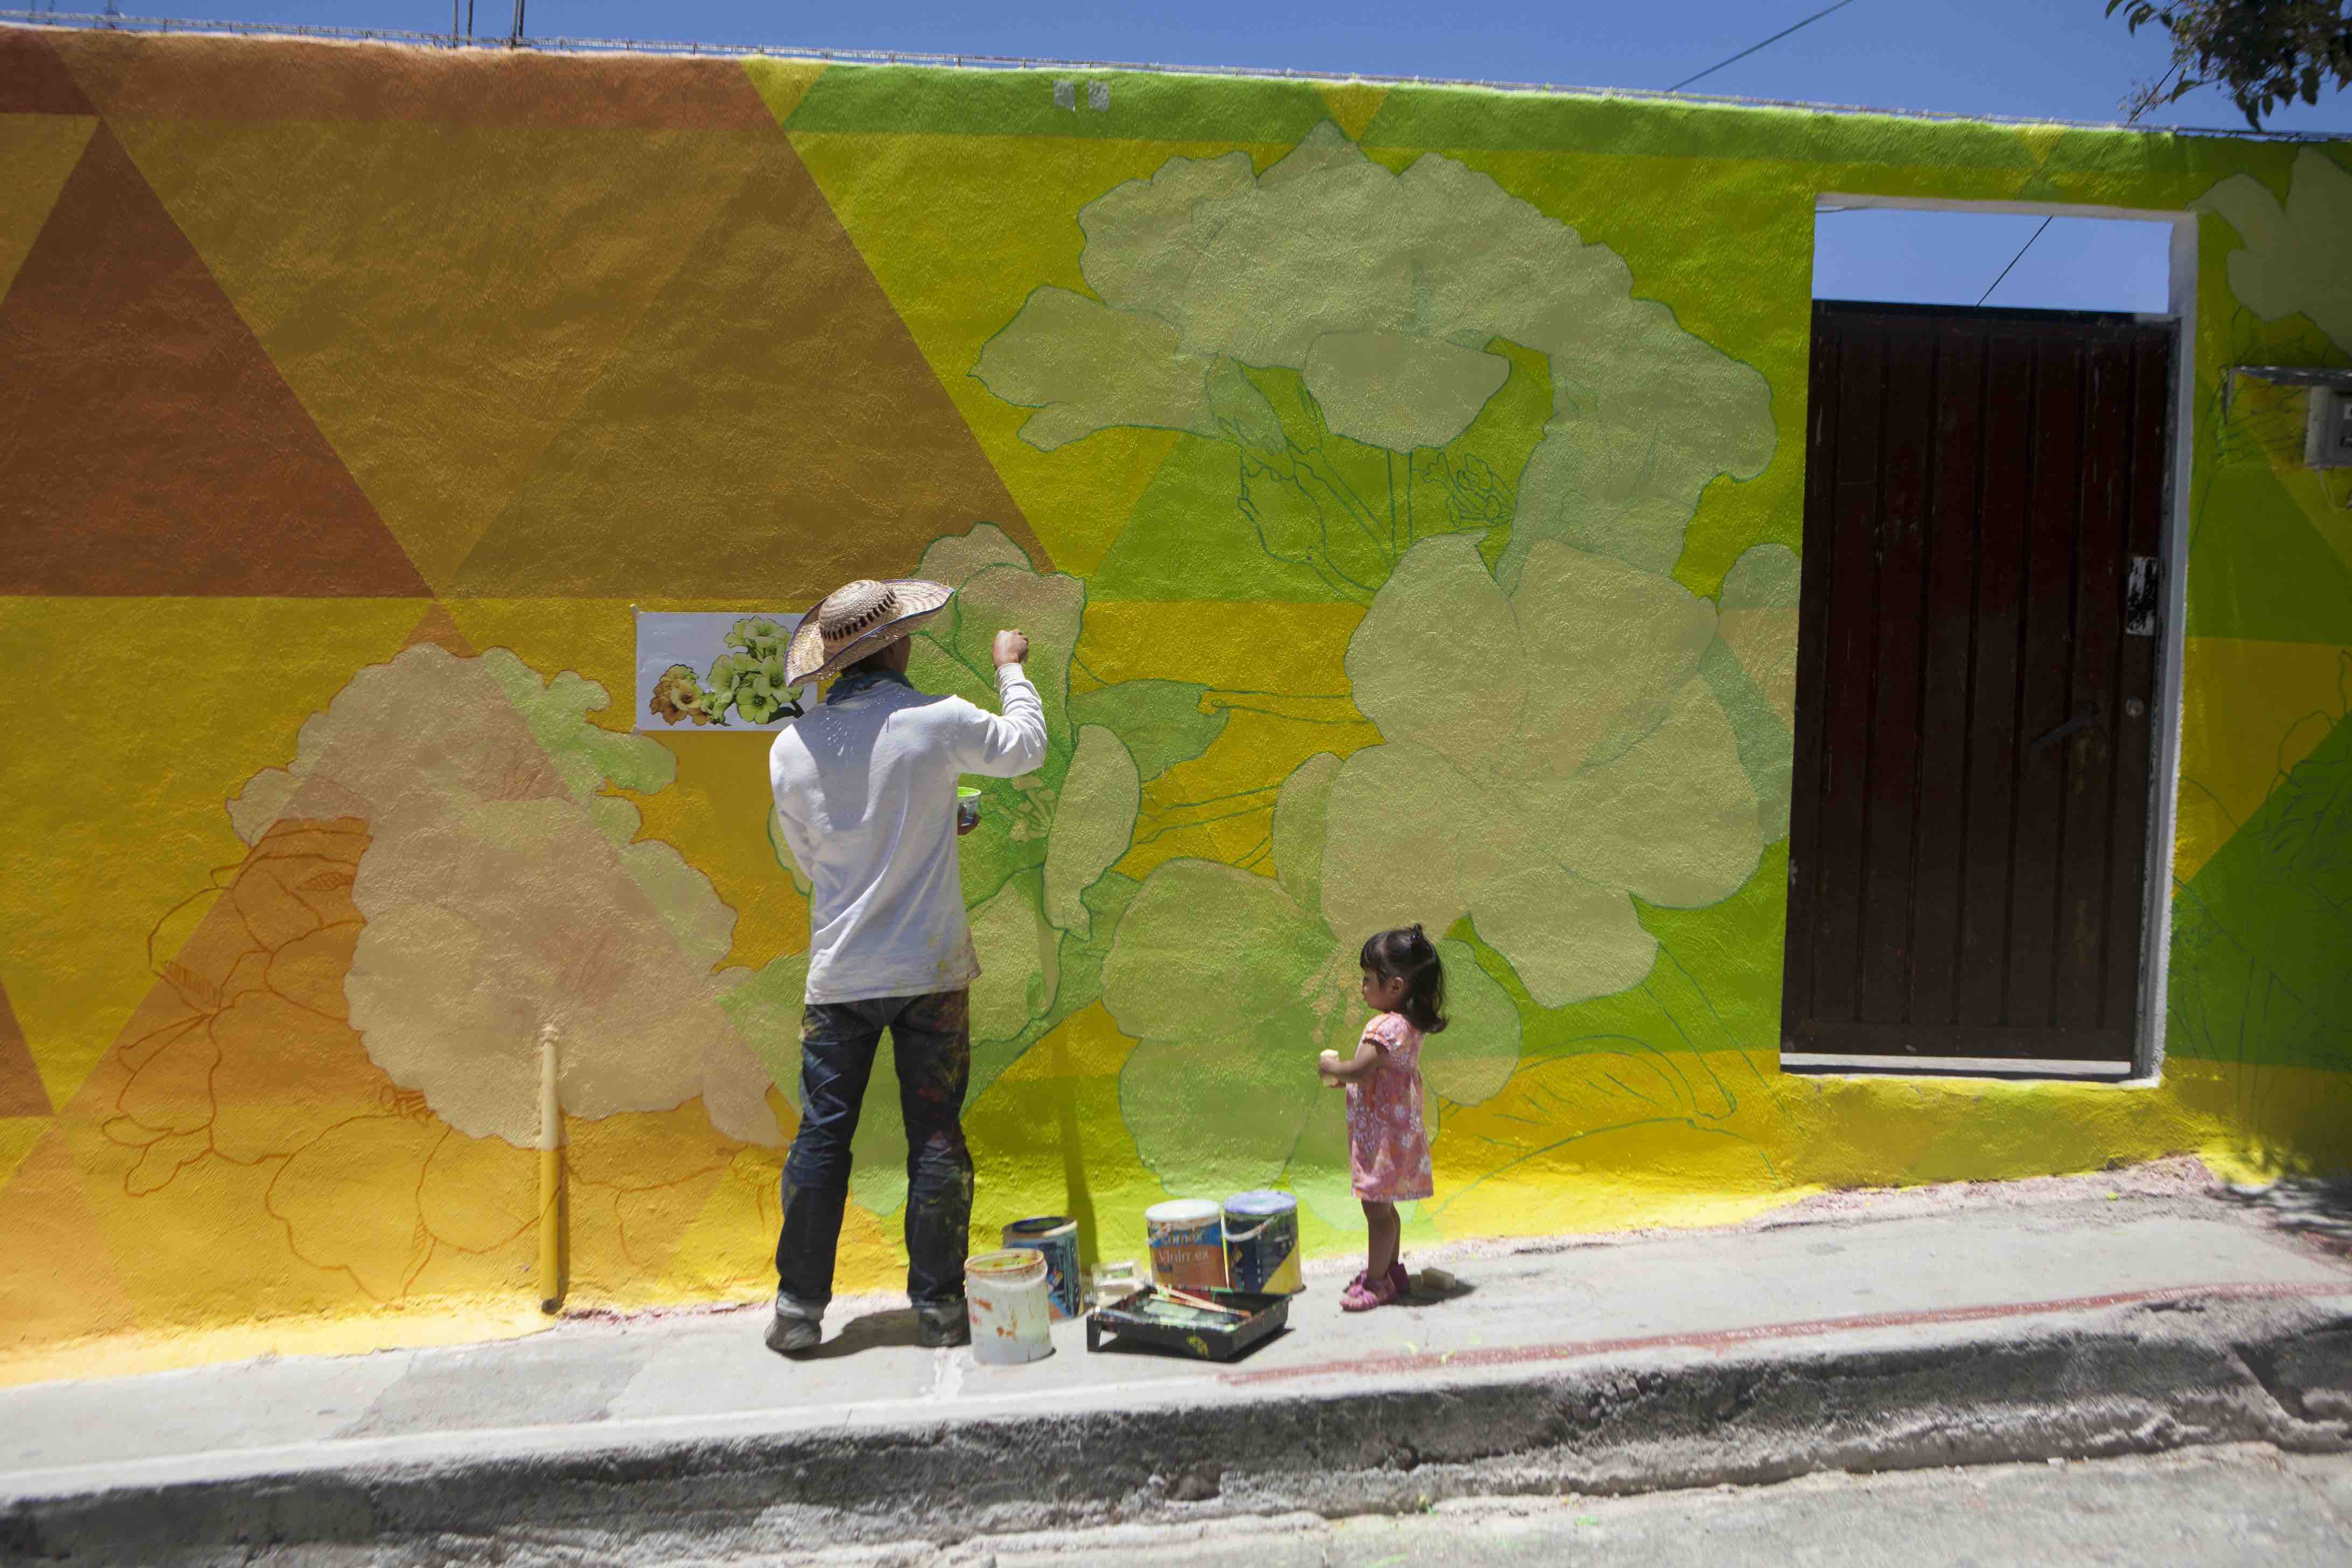 Carlos Duarte, del colectivo artístico Germen Colectivo, acompañado por la niña Regina Robles, pinta una parte del mural gigante en el barrio Palmitas, Pachuca, México, 30 de julio de 2015. (AP Foto/Sofia Jaramillo)